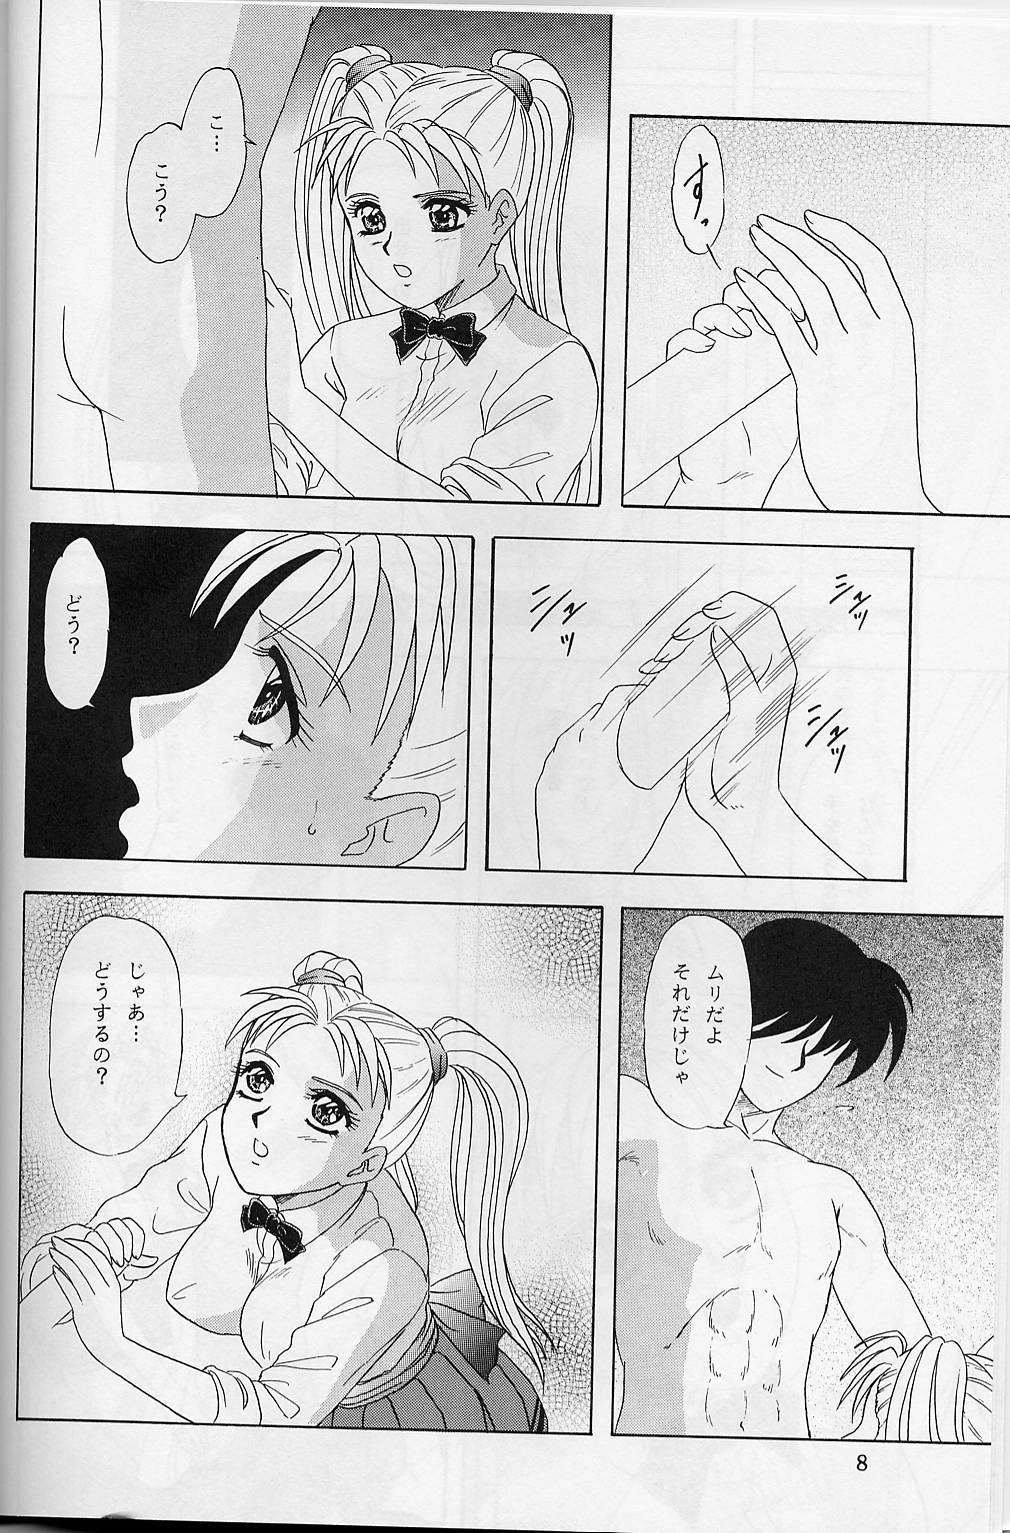 Bathroom Lunch Box 32 - Toshishita no Onnanoko 3 - Kakyuusei Couple Sex - Page 7